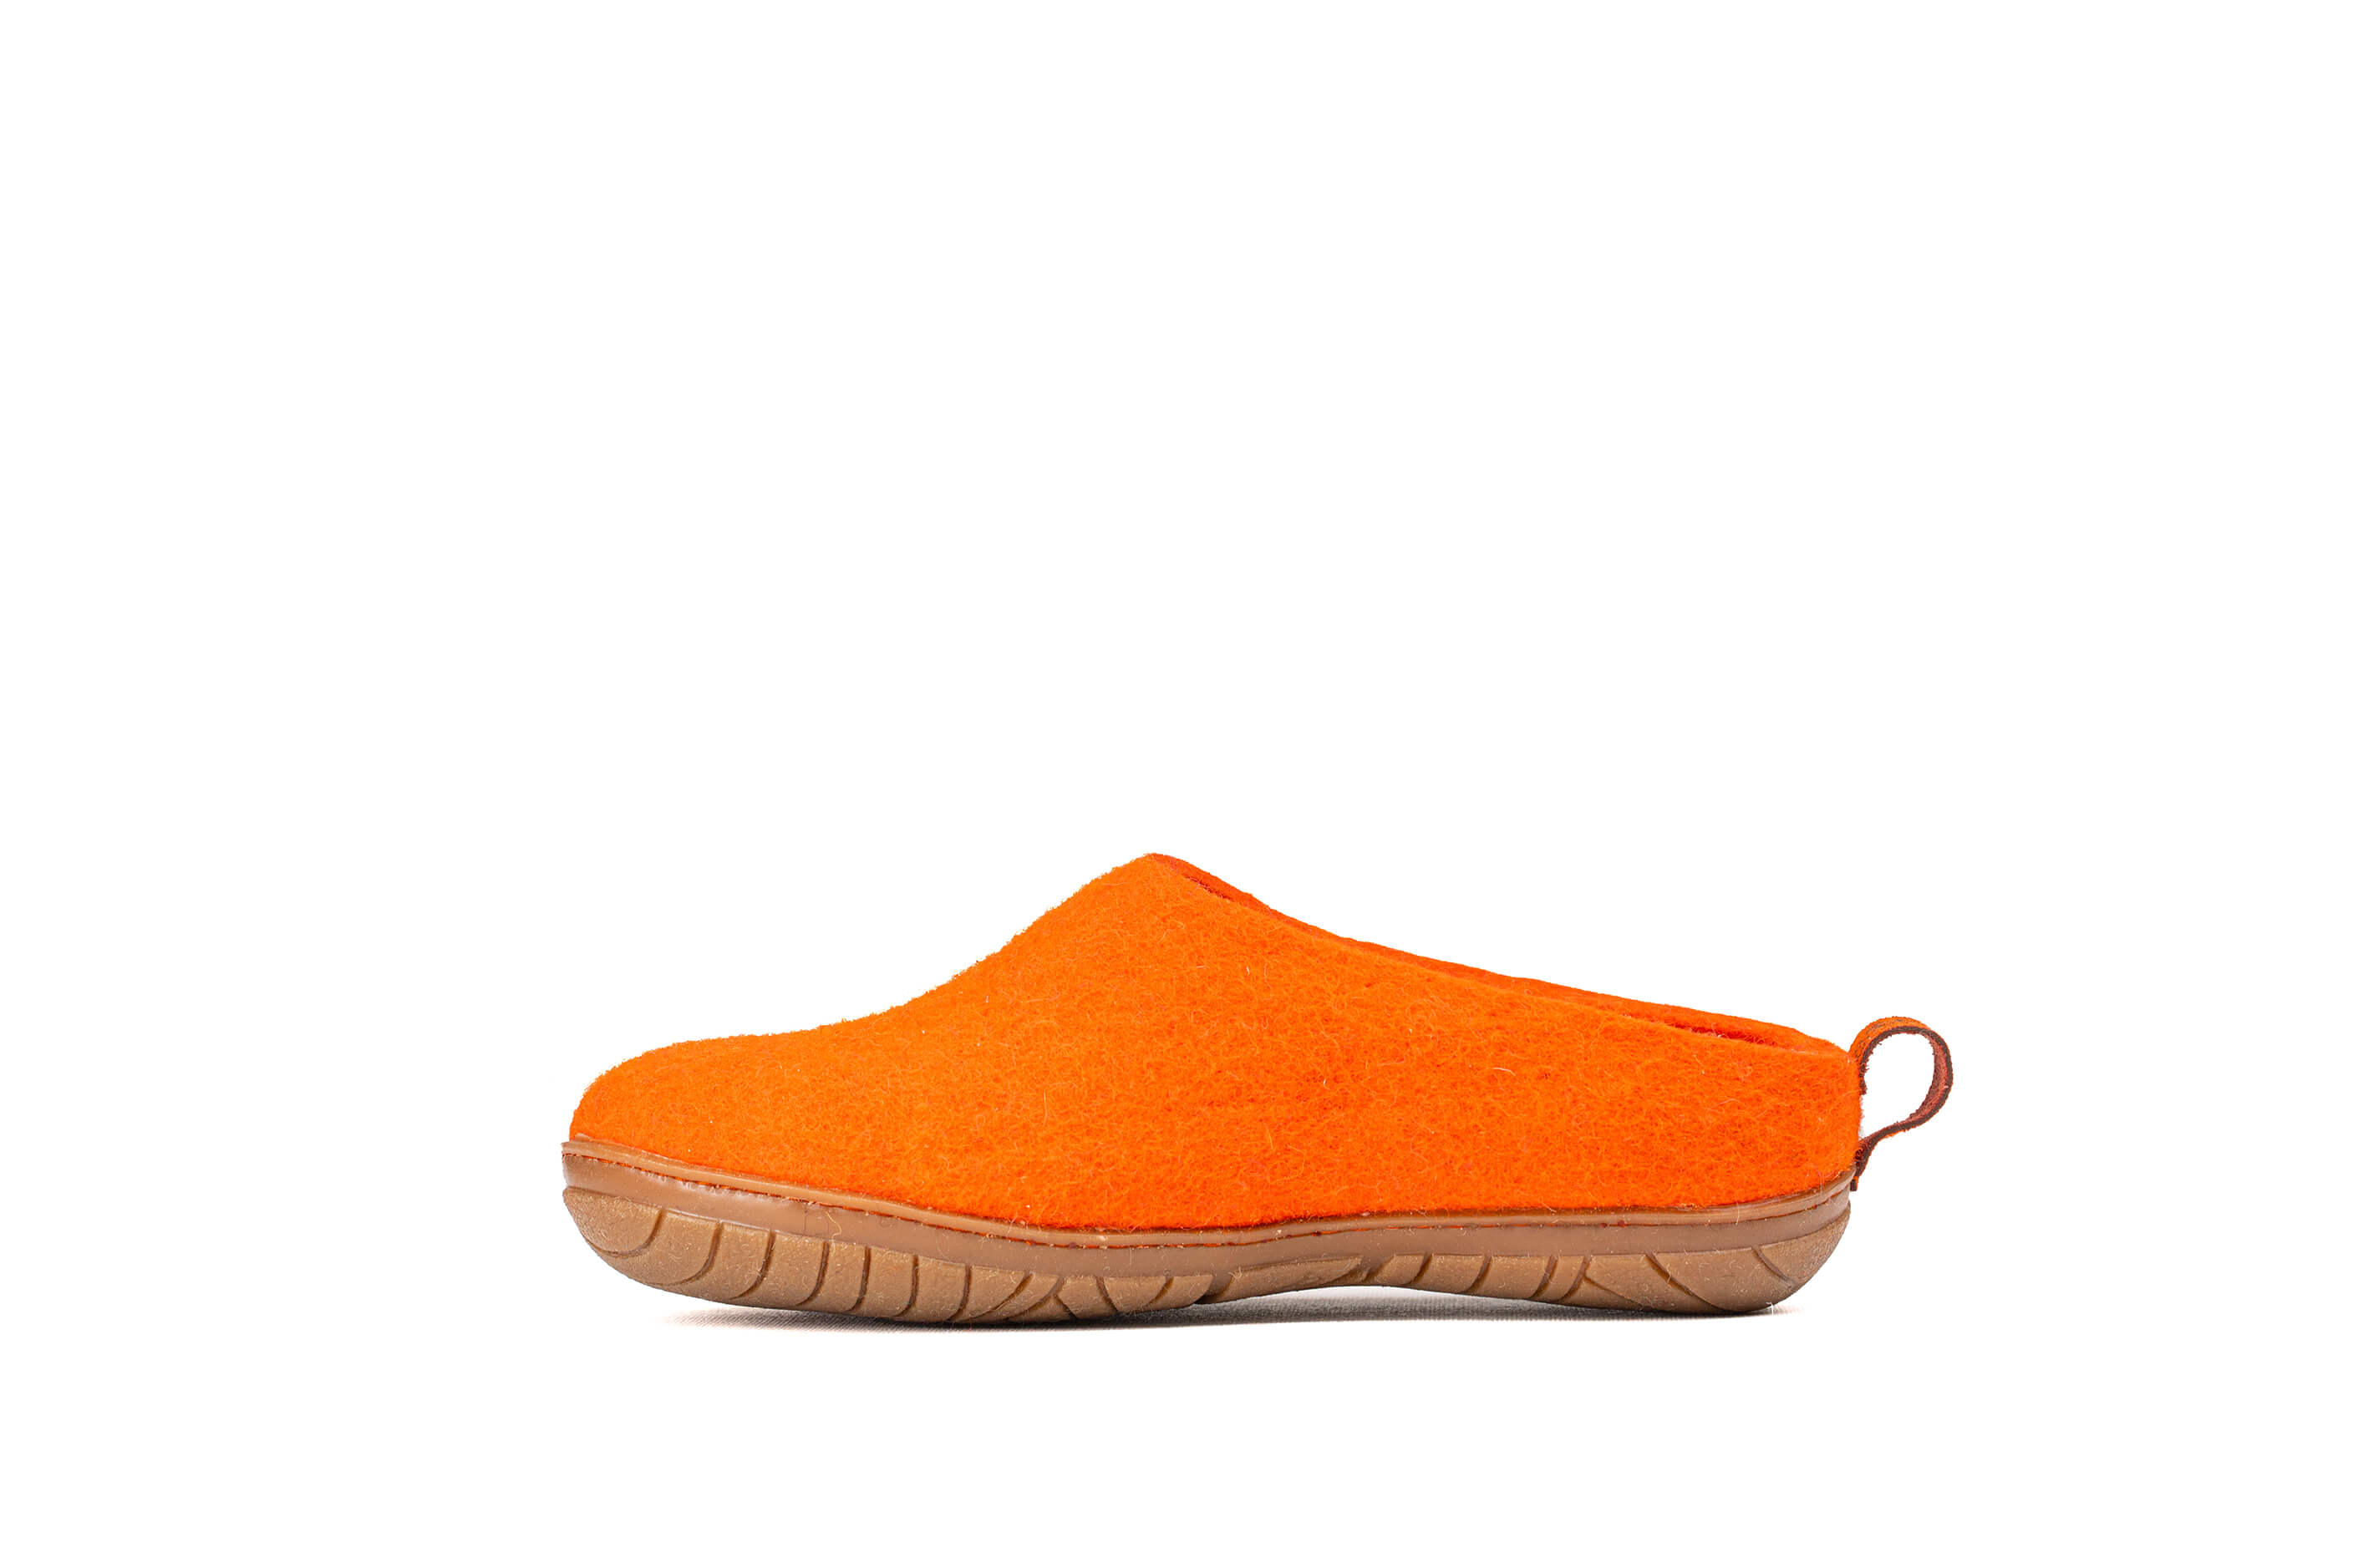 Outdoor Open Heel Slippers With Rubber Sole - Orange